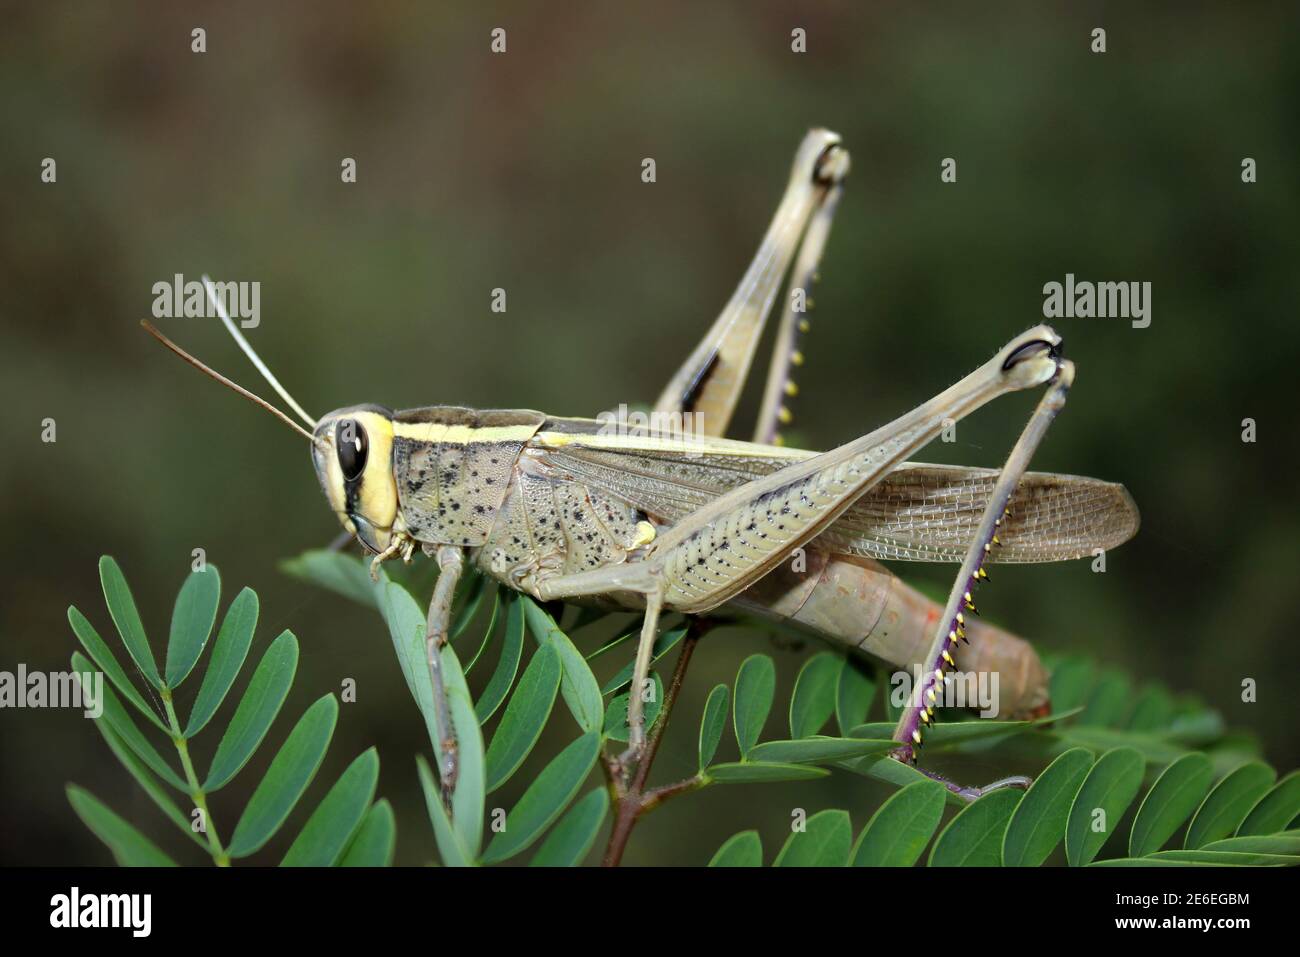 Grasshopper, Bhuj, Gujarat, India Stock Photo